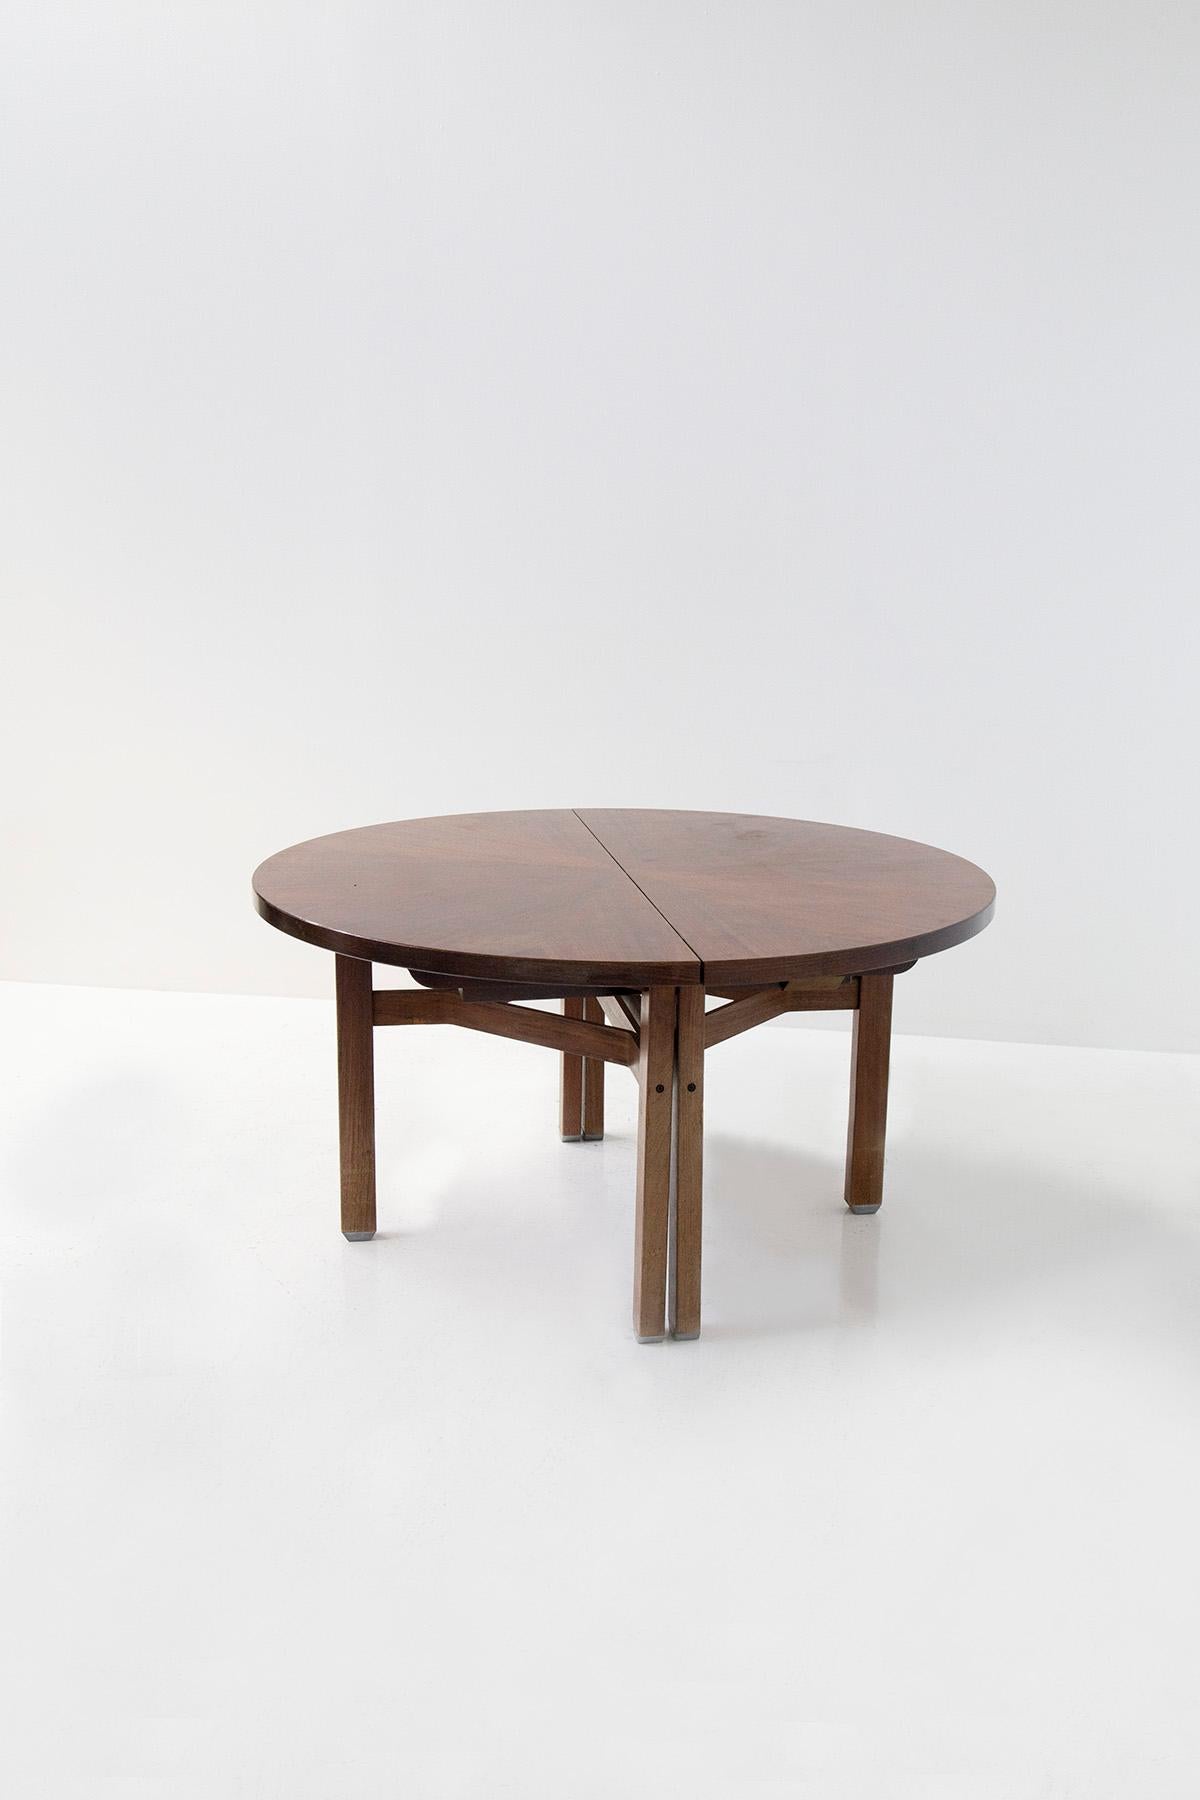 Der Tisch Olbia von Ico Parisi, ein Meisterwerk des Designs und der Handwerkskunst, ist ein wahres Zeugnis für die Eleganz und Innovation italienischer Möbel aus der Mitte des Jahrhunderts. Seine anmutige runde Form in Verbindung mit der Verwendung